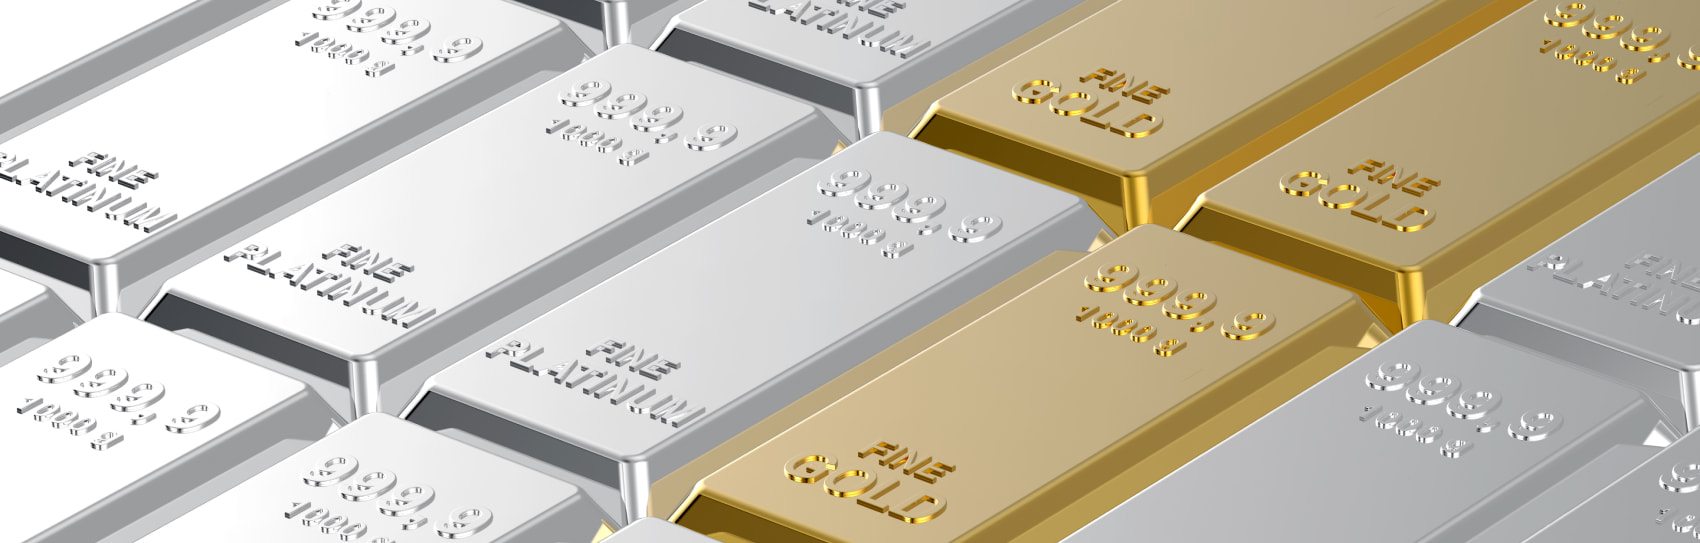 FXI Trading Precious Metals Guide